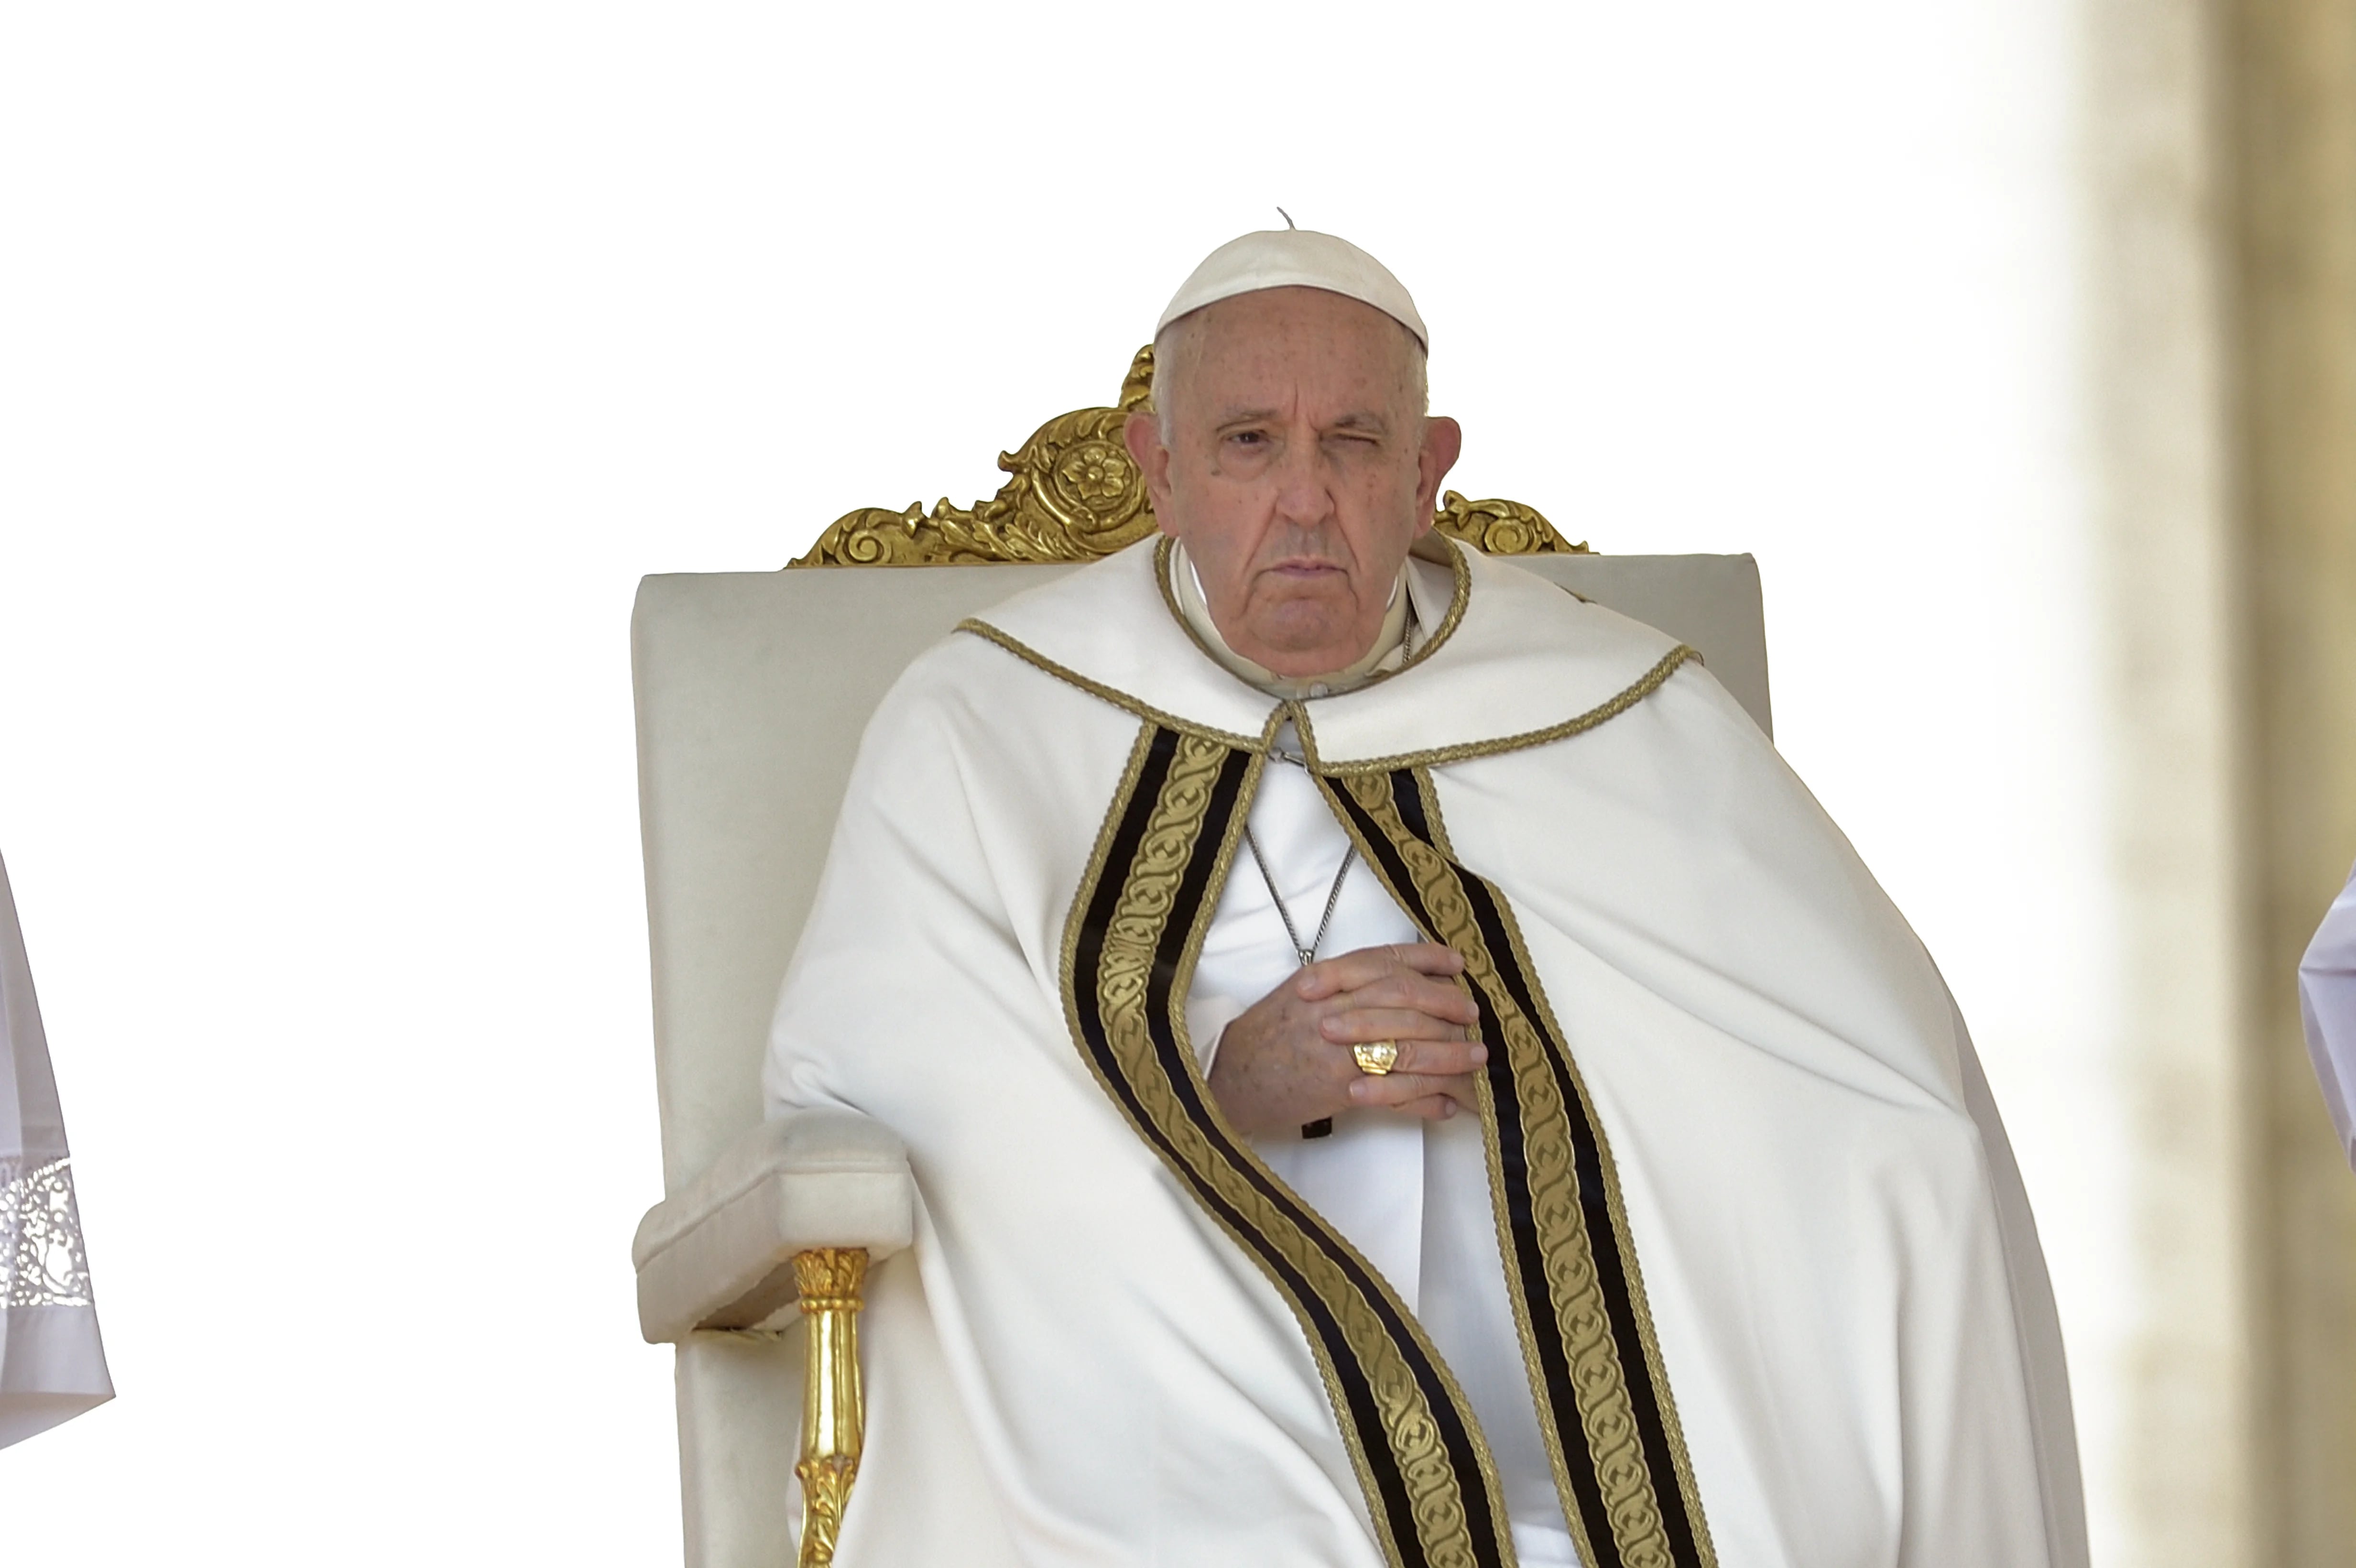 El papa Francisco volvió a alertar sobre la crisis climática: “El mundo se desmorona y se acerca a un punto de quiebre”